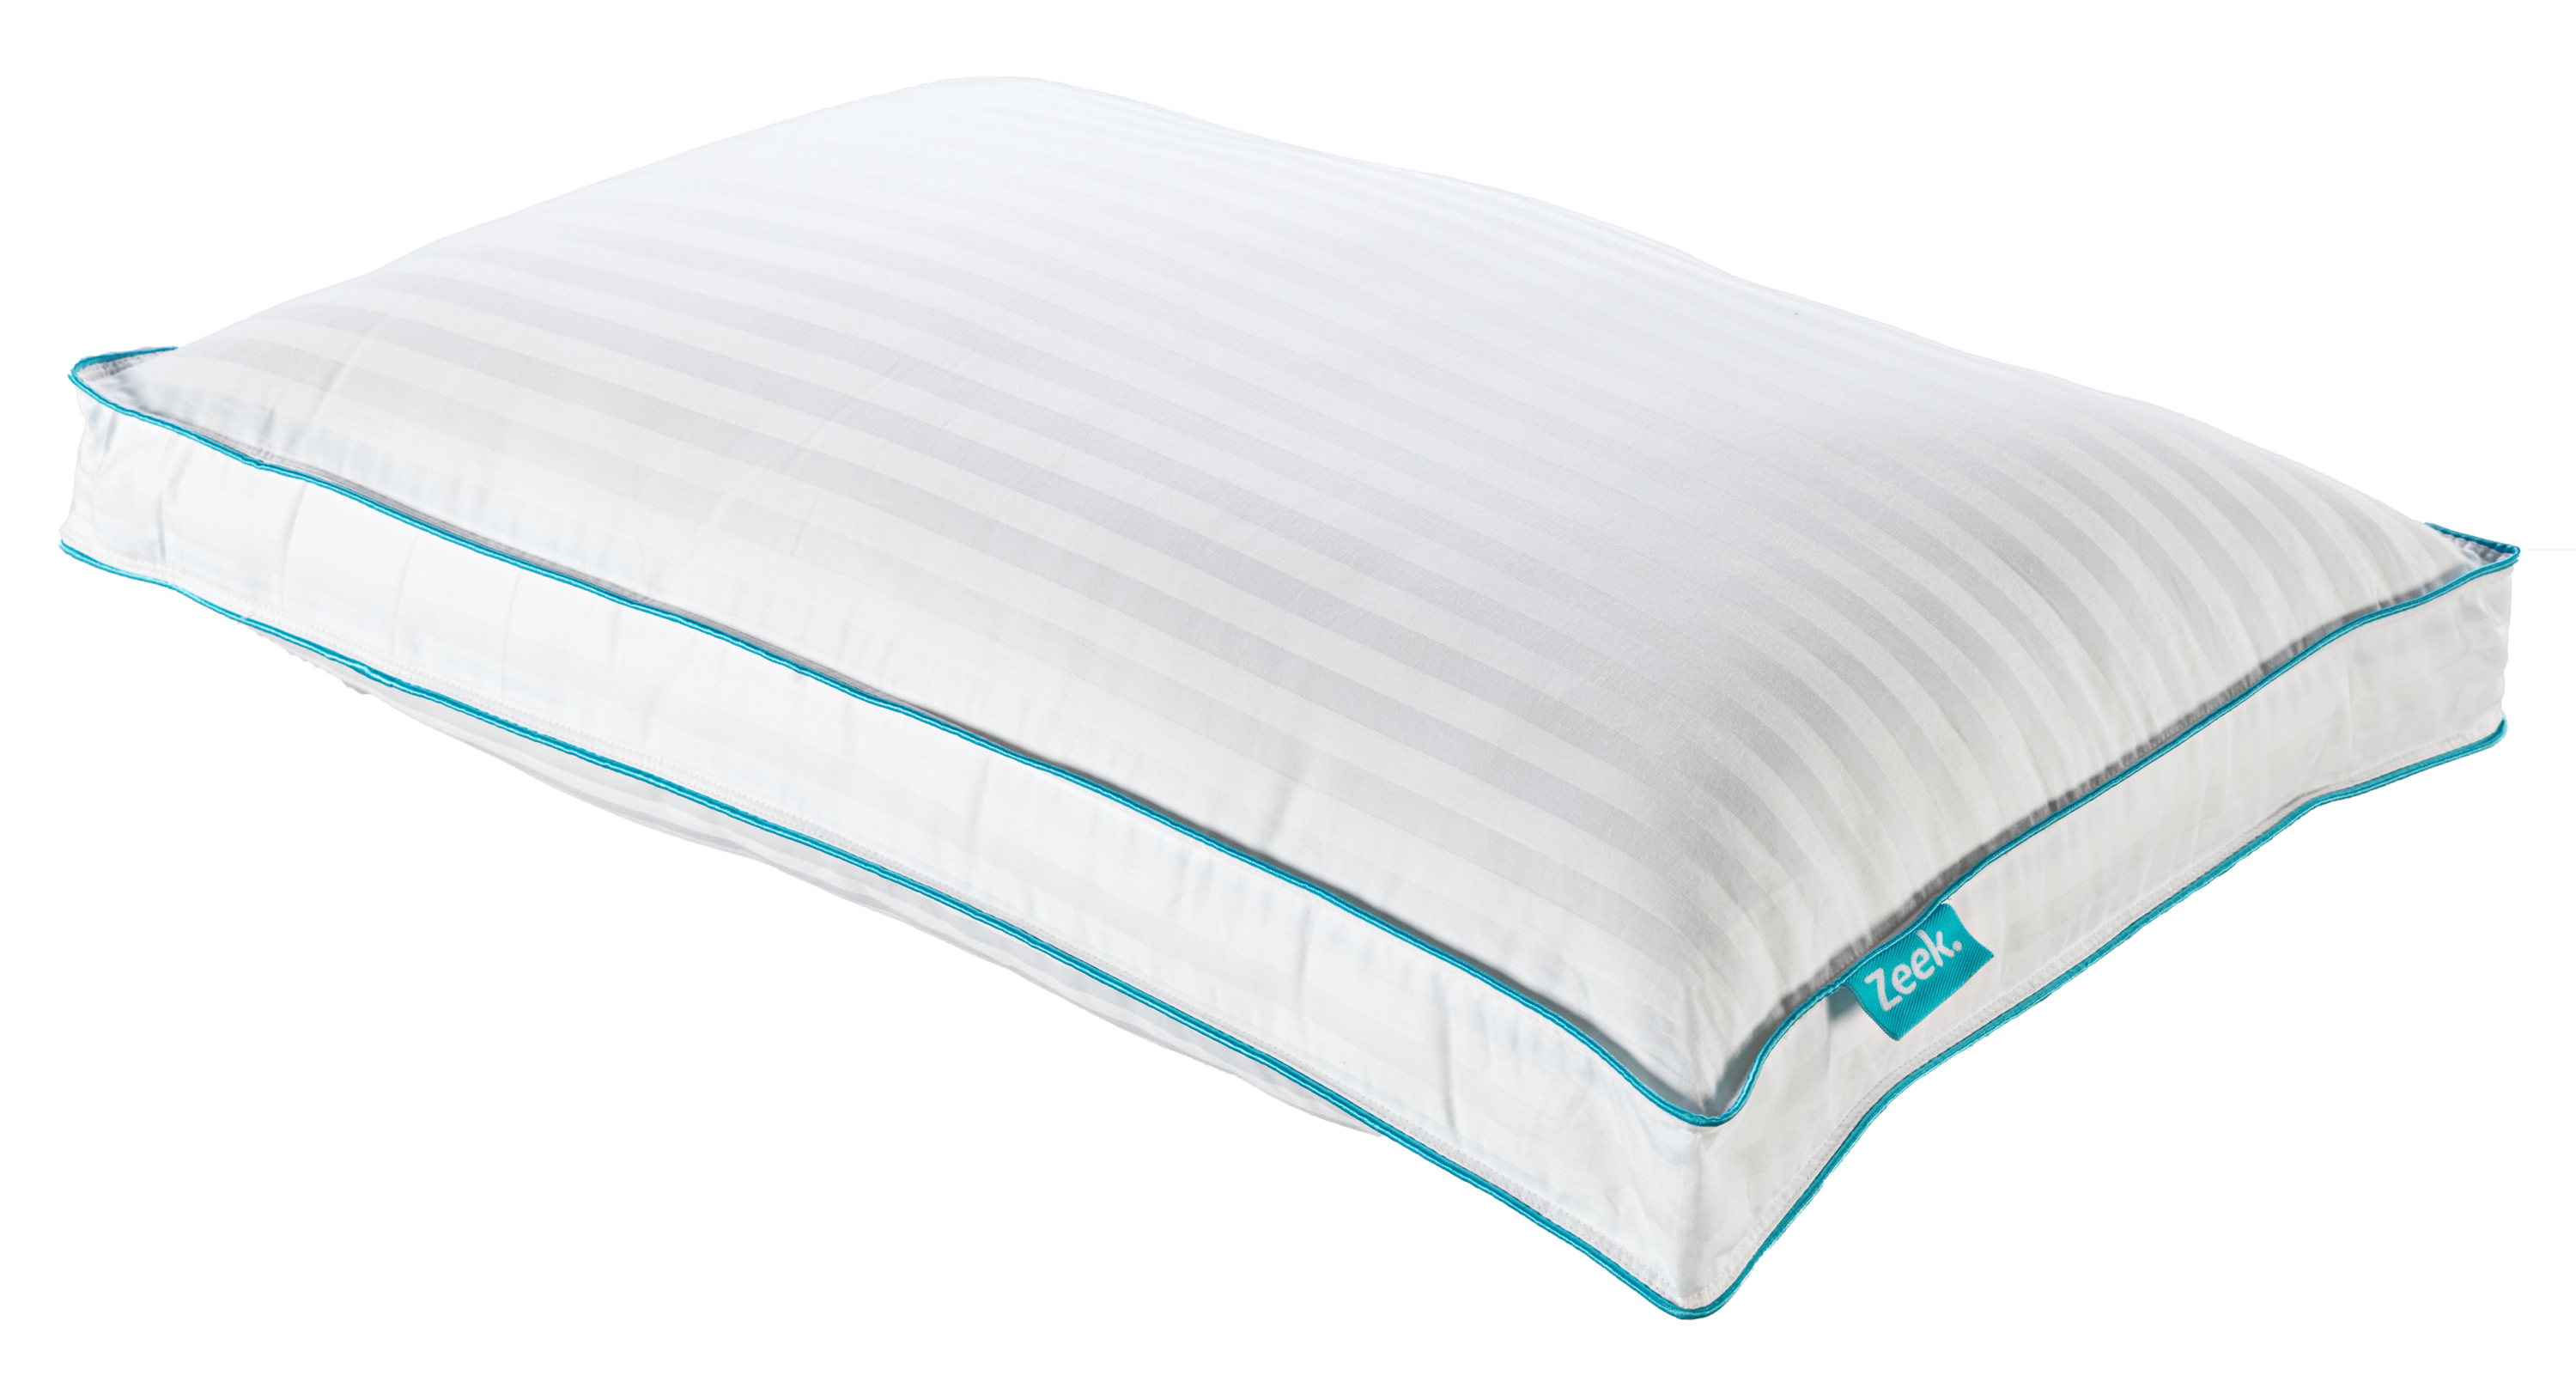 Image of a Zeek Fancy Pillow.